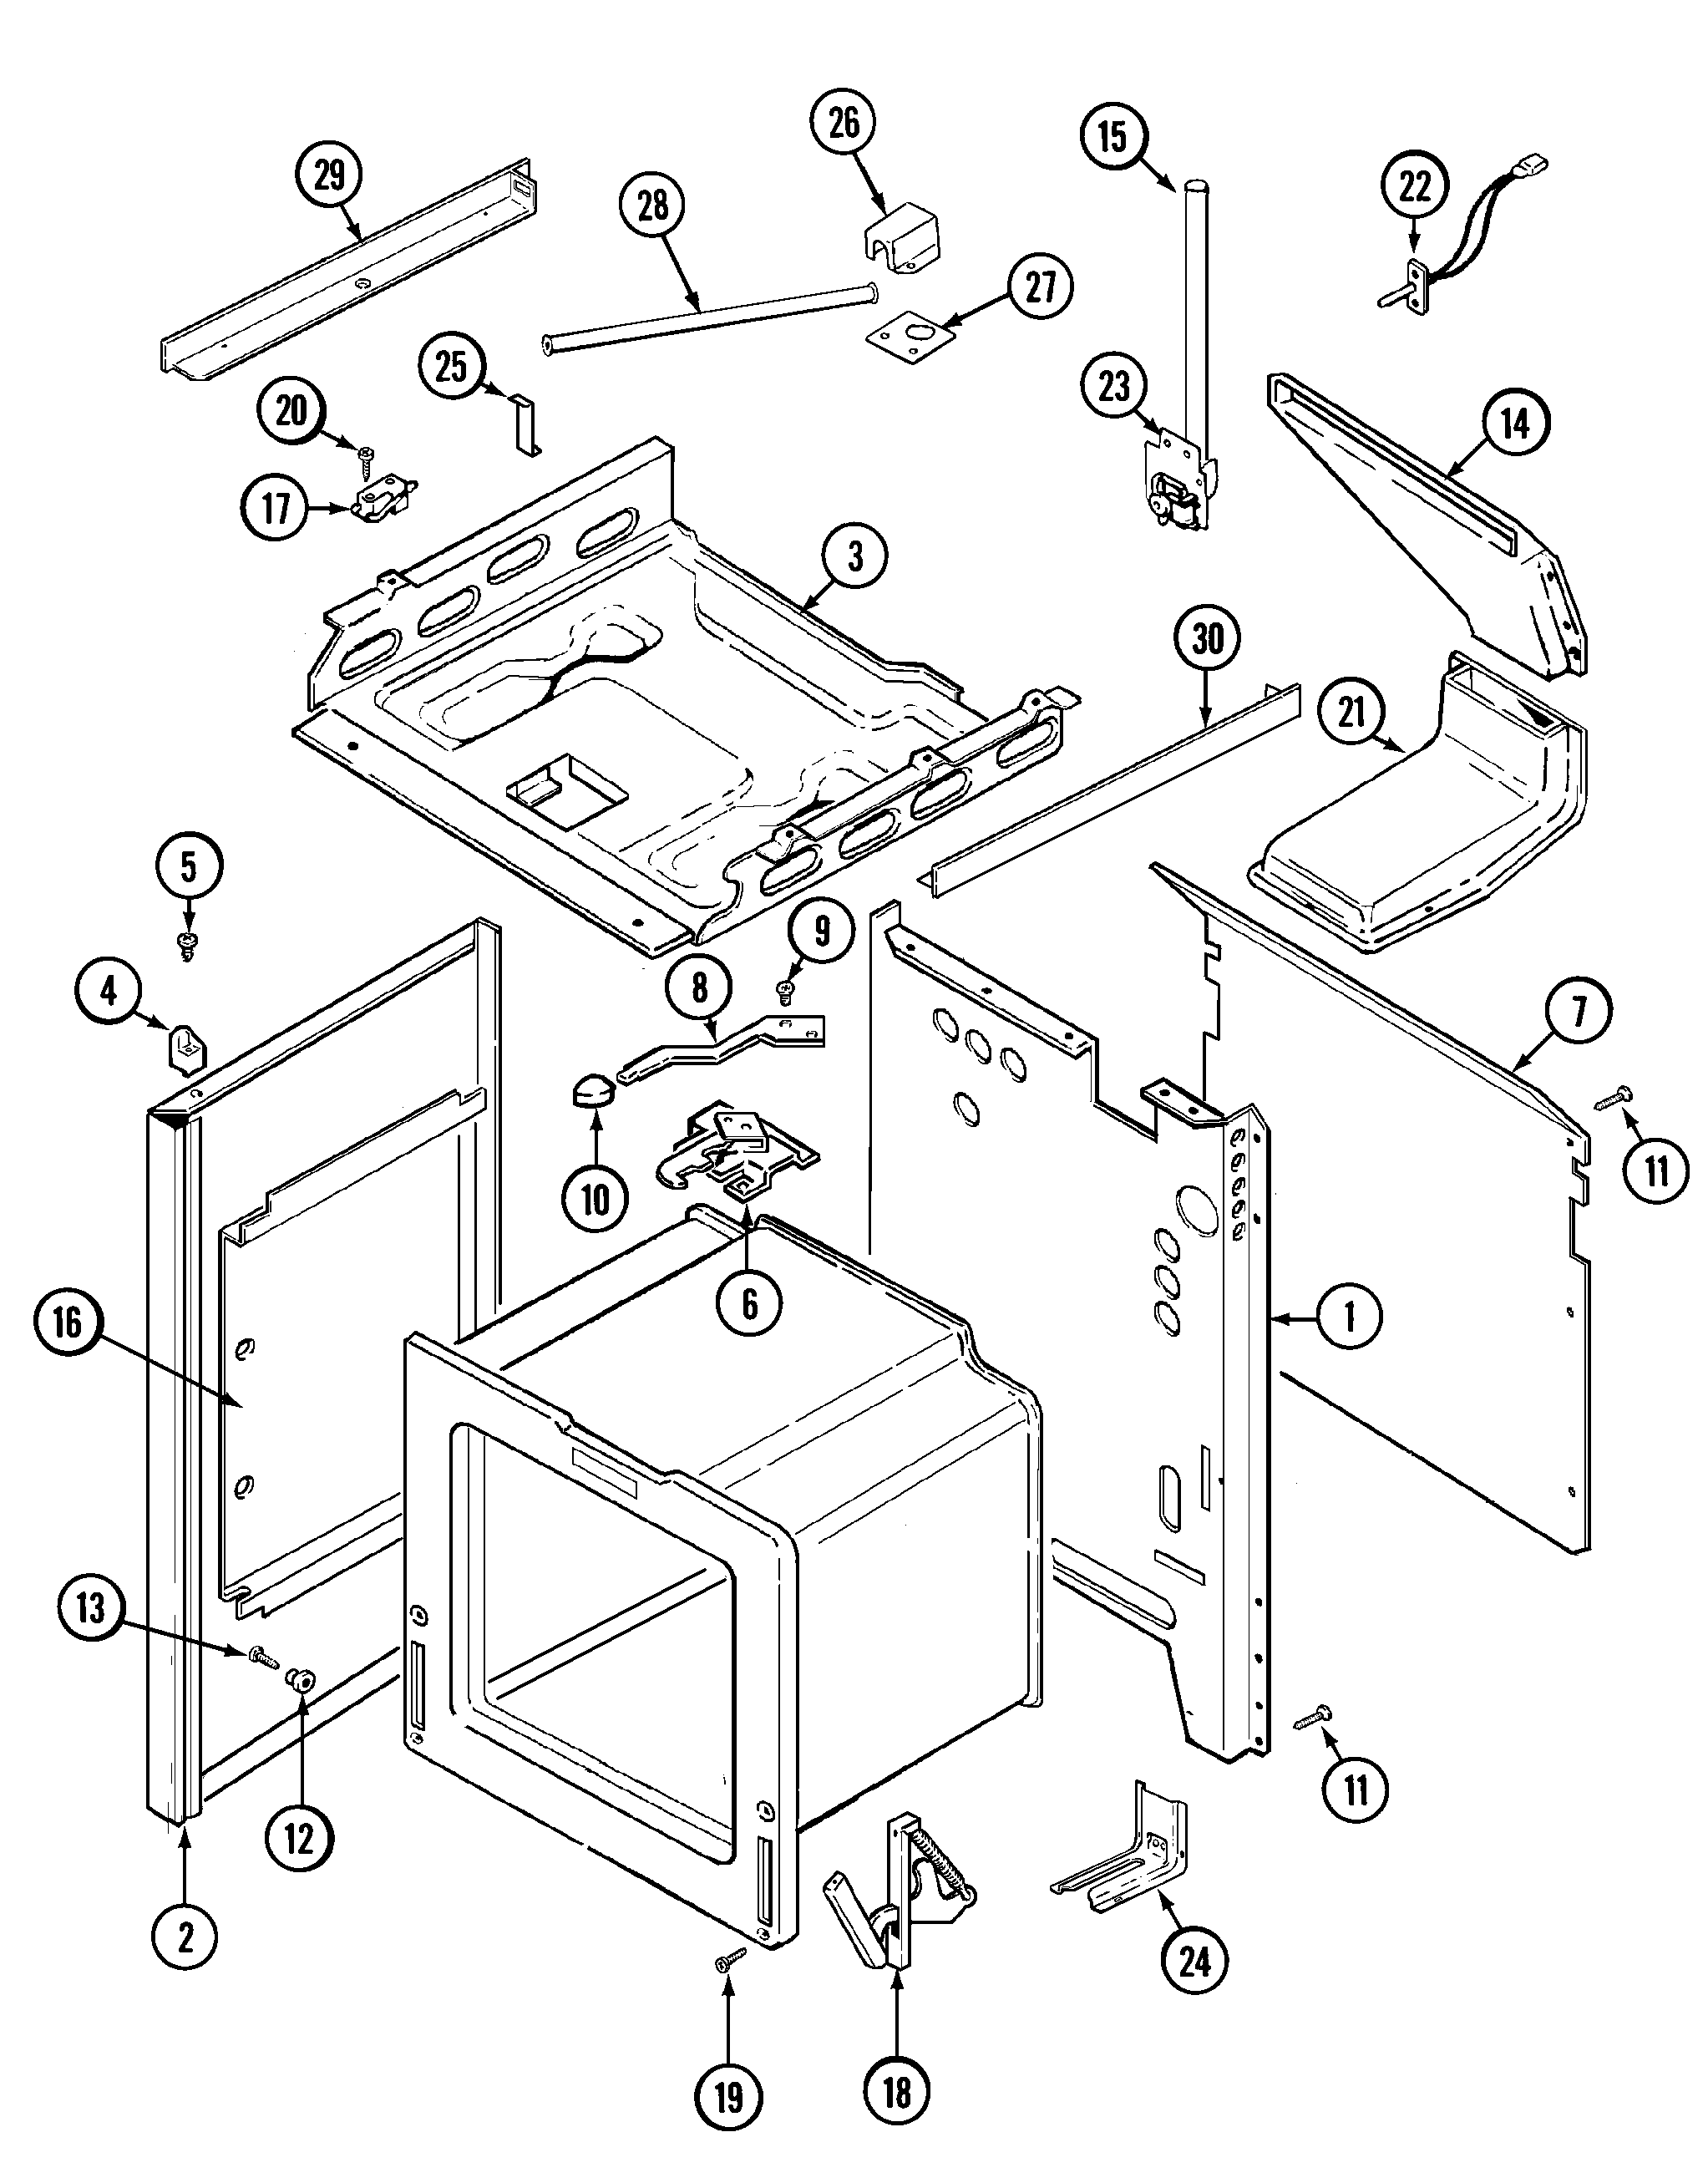 https://www.appliancetimers.com/images/appliances/manuals/6498VTV/body-parts.png